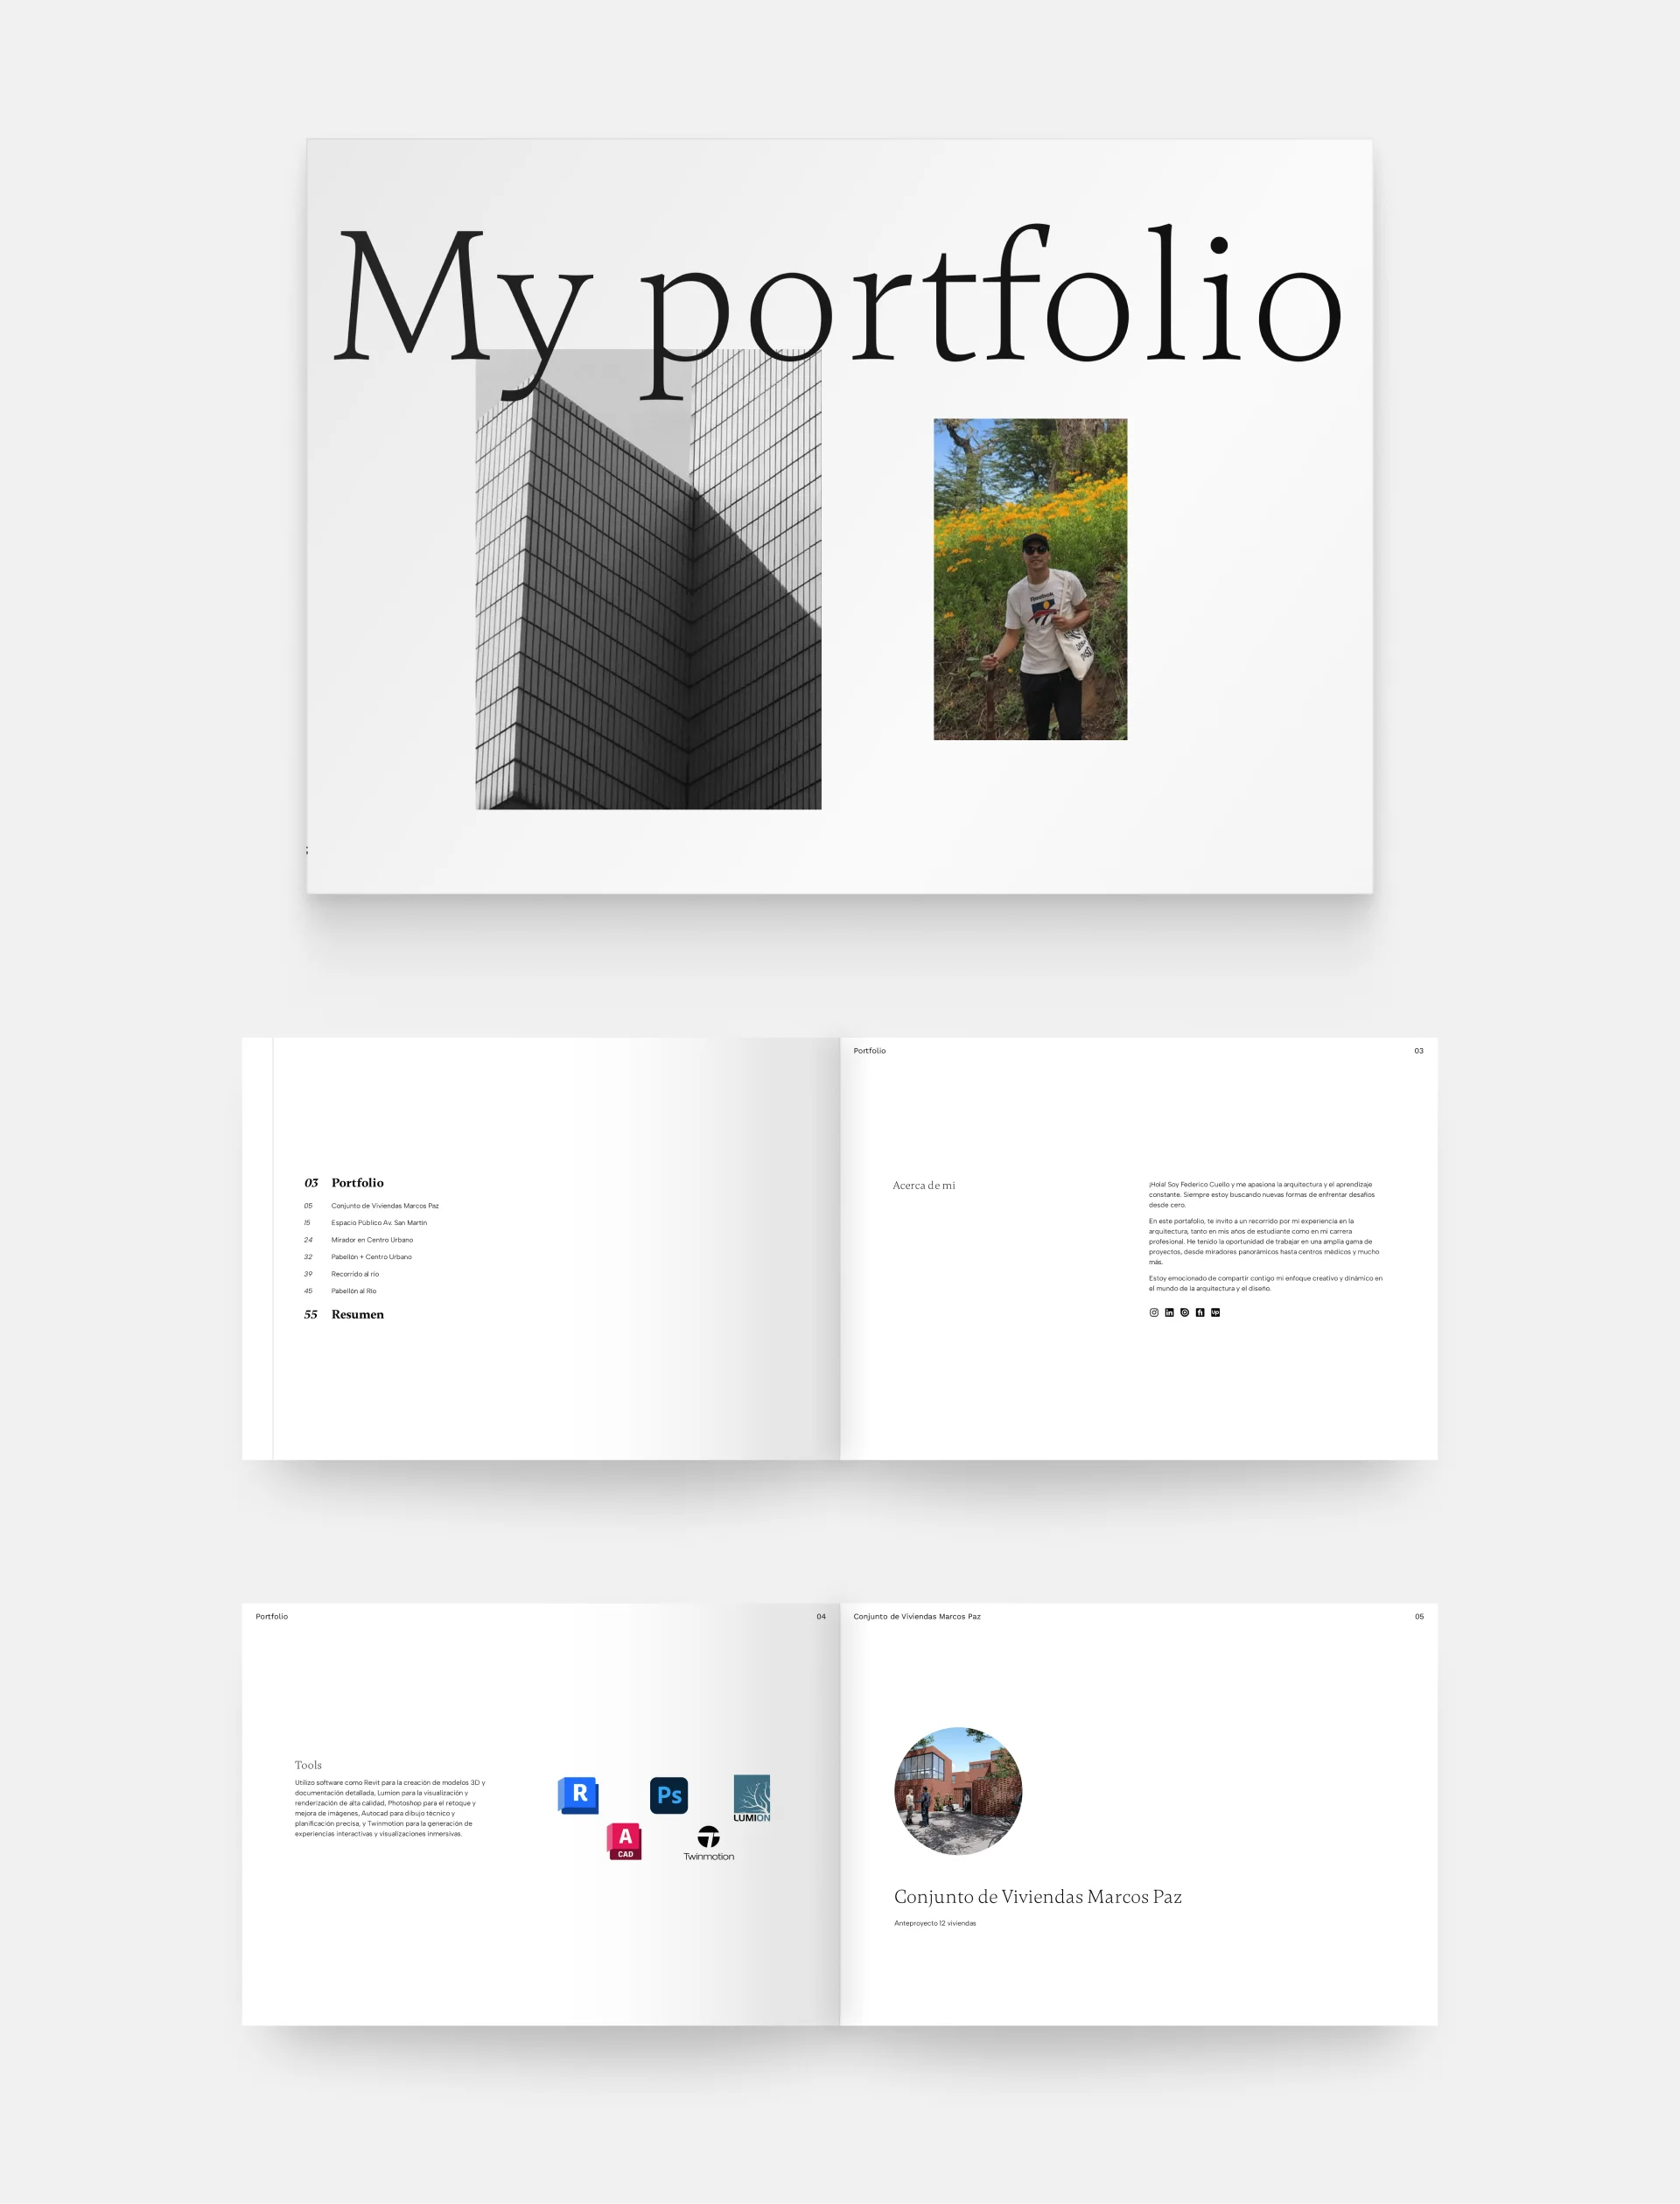 Five PDF pages from Federico Cuello's portfolio